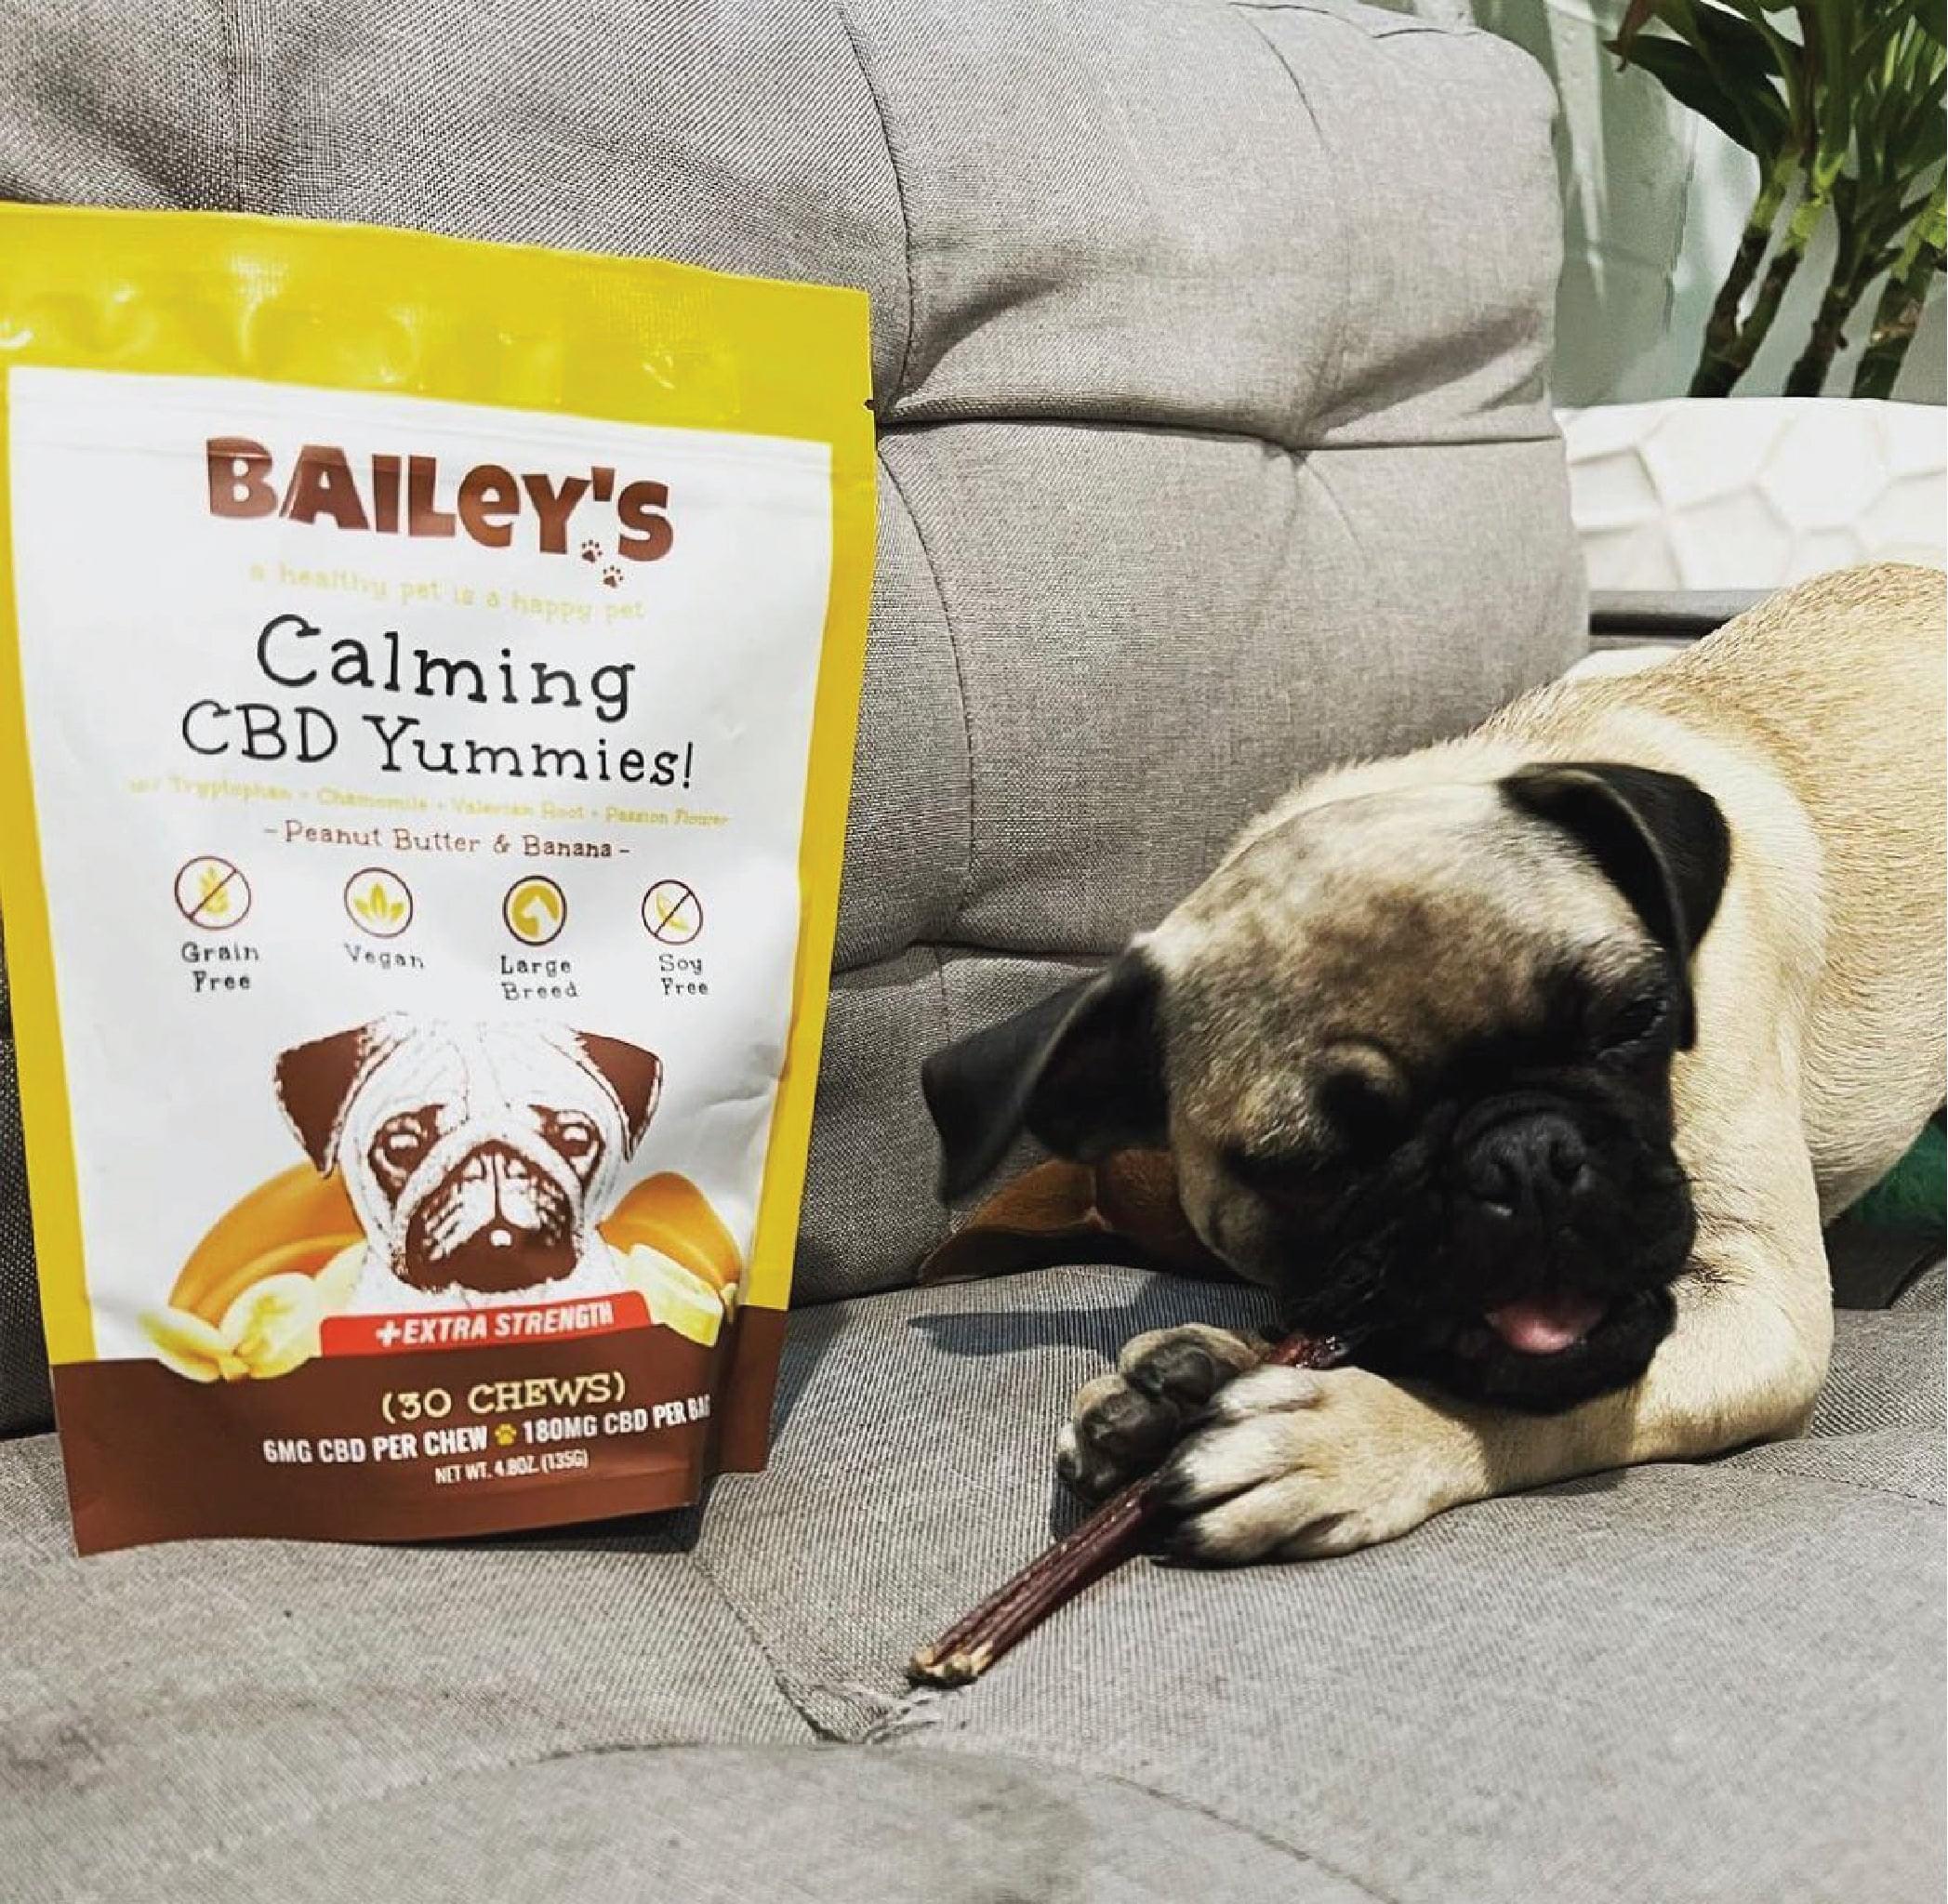 Delicias calmantes para perros con CBD de Bailey's - Perros pequeños